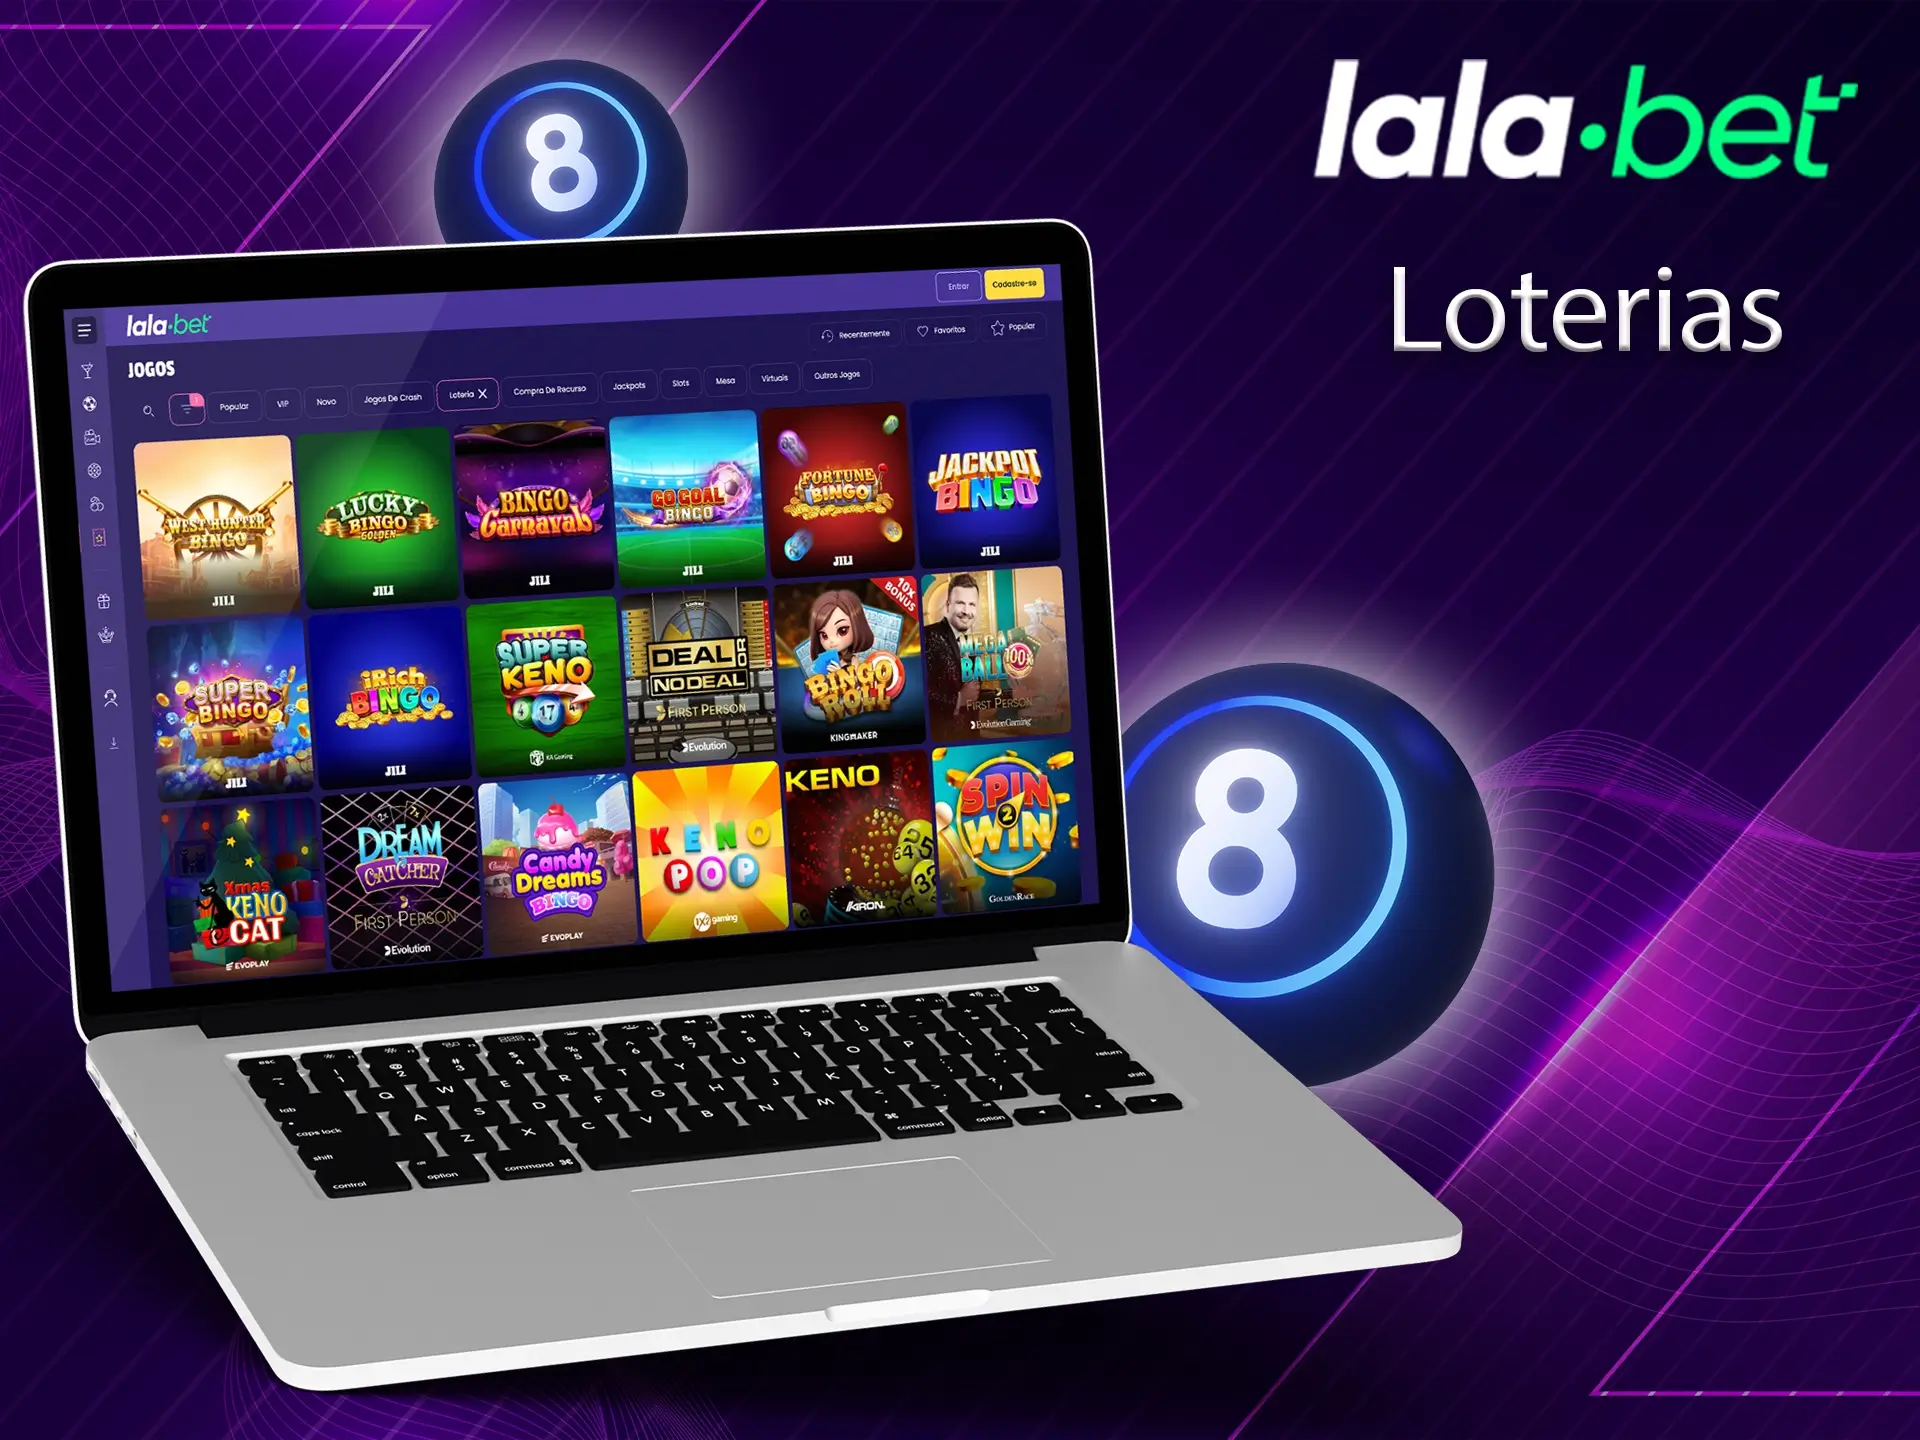 Os jogadores que preferem o bingo encontrarão muitos jogos interessantes e emocionantes para atender às suas preferências no Lalabet.